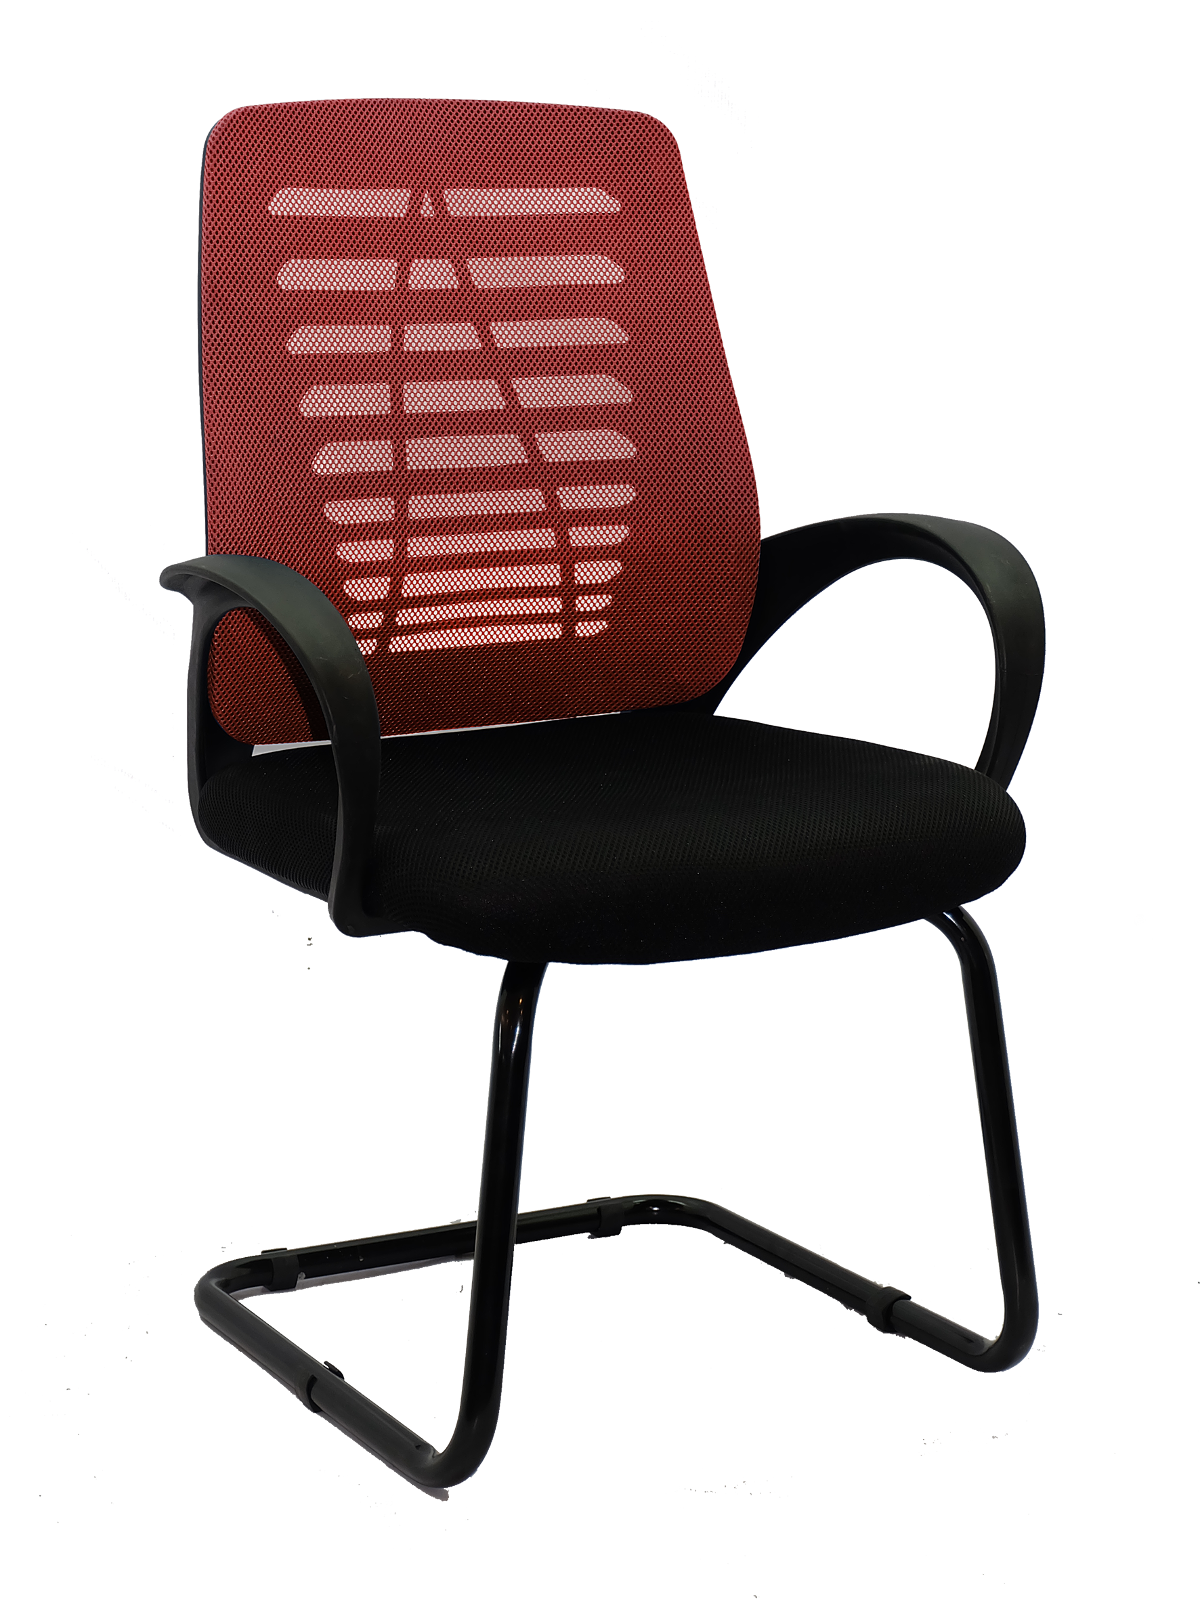 เก้าอี้สำนักงาน ห้องประชุม รุ่น ERGO-B 516 V